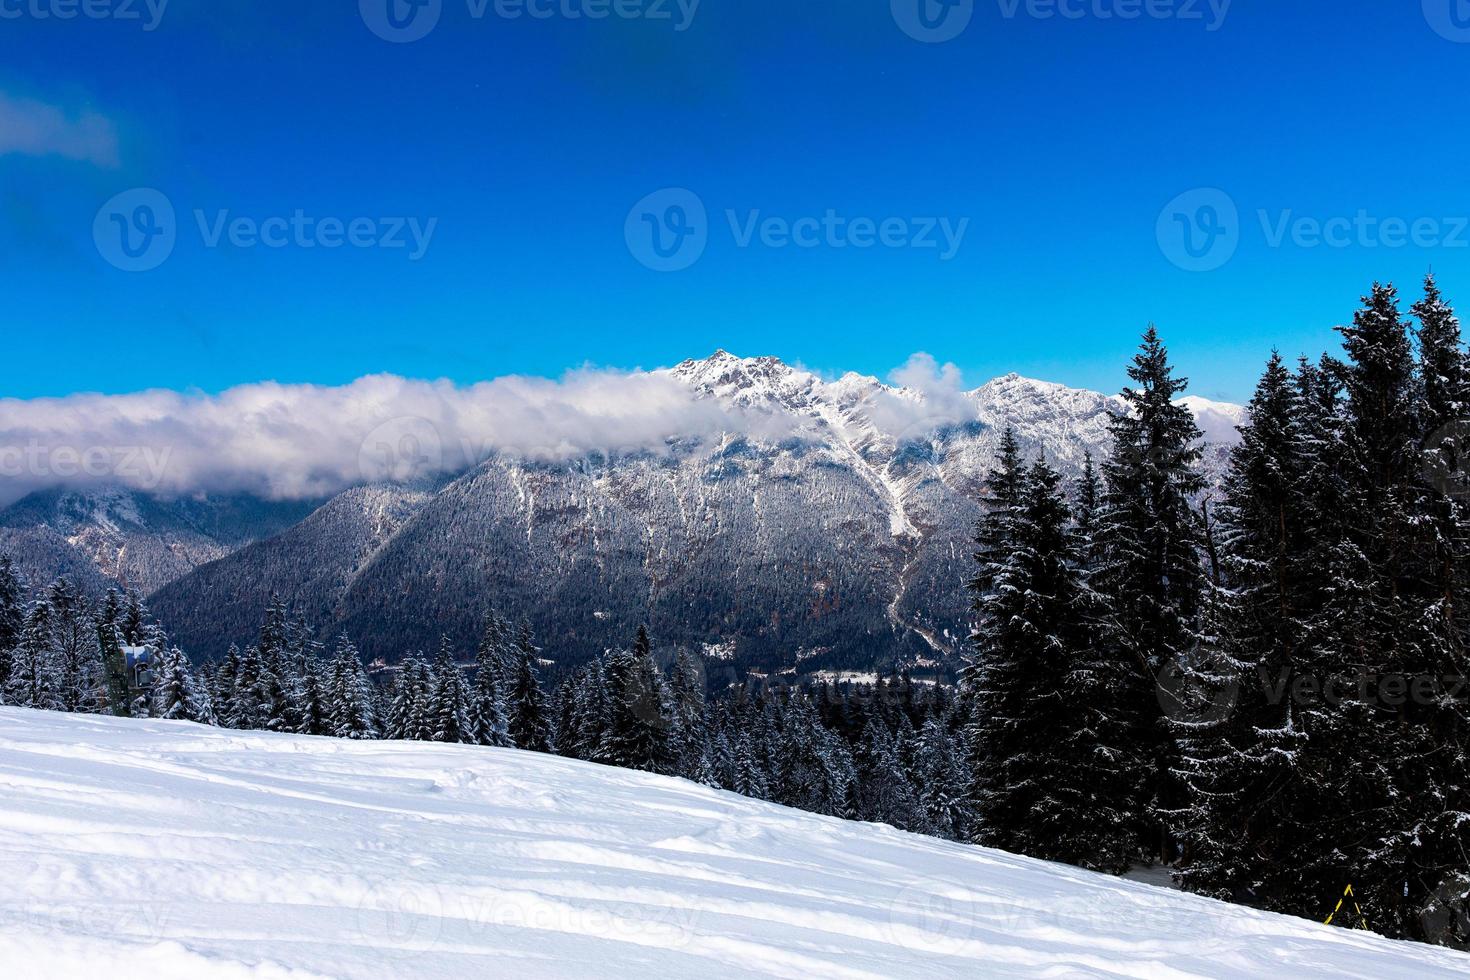 floresta alpina com picos de montanhas cobertos de neve ao fundo, sob o céu azul foto